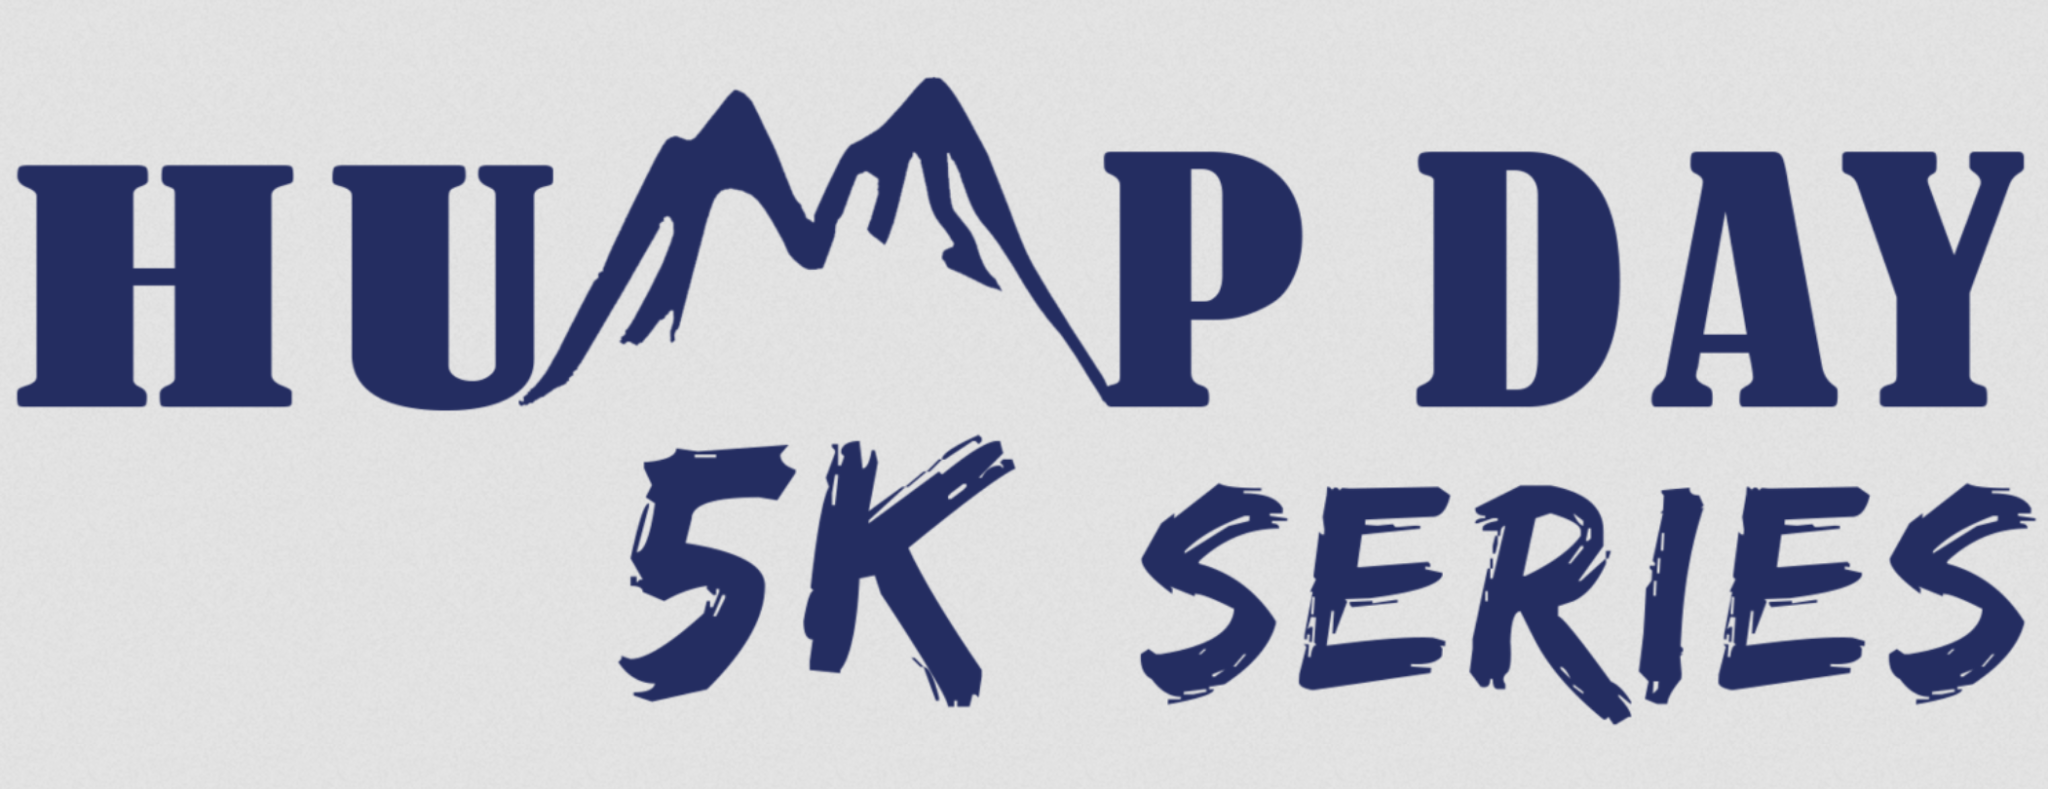 Hump Day 5K Summer Series June logo on RaceRaves